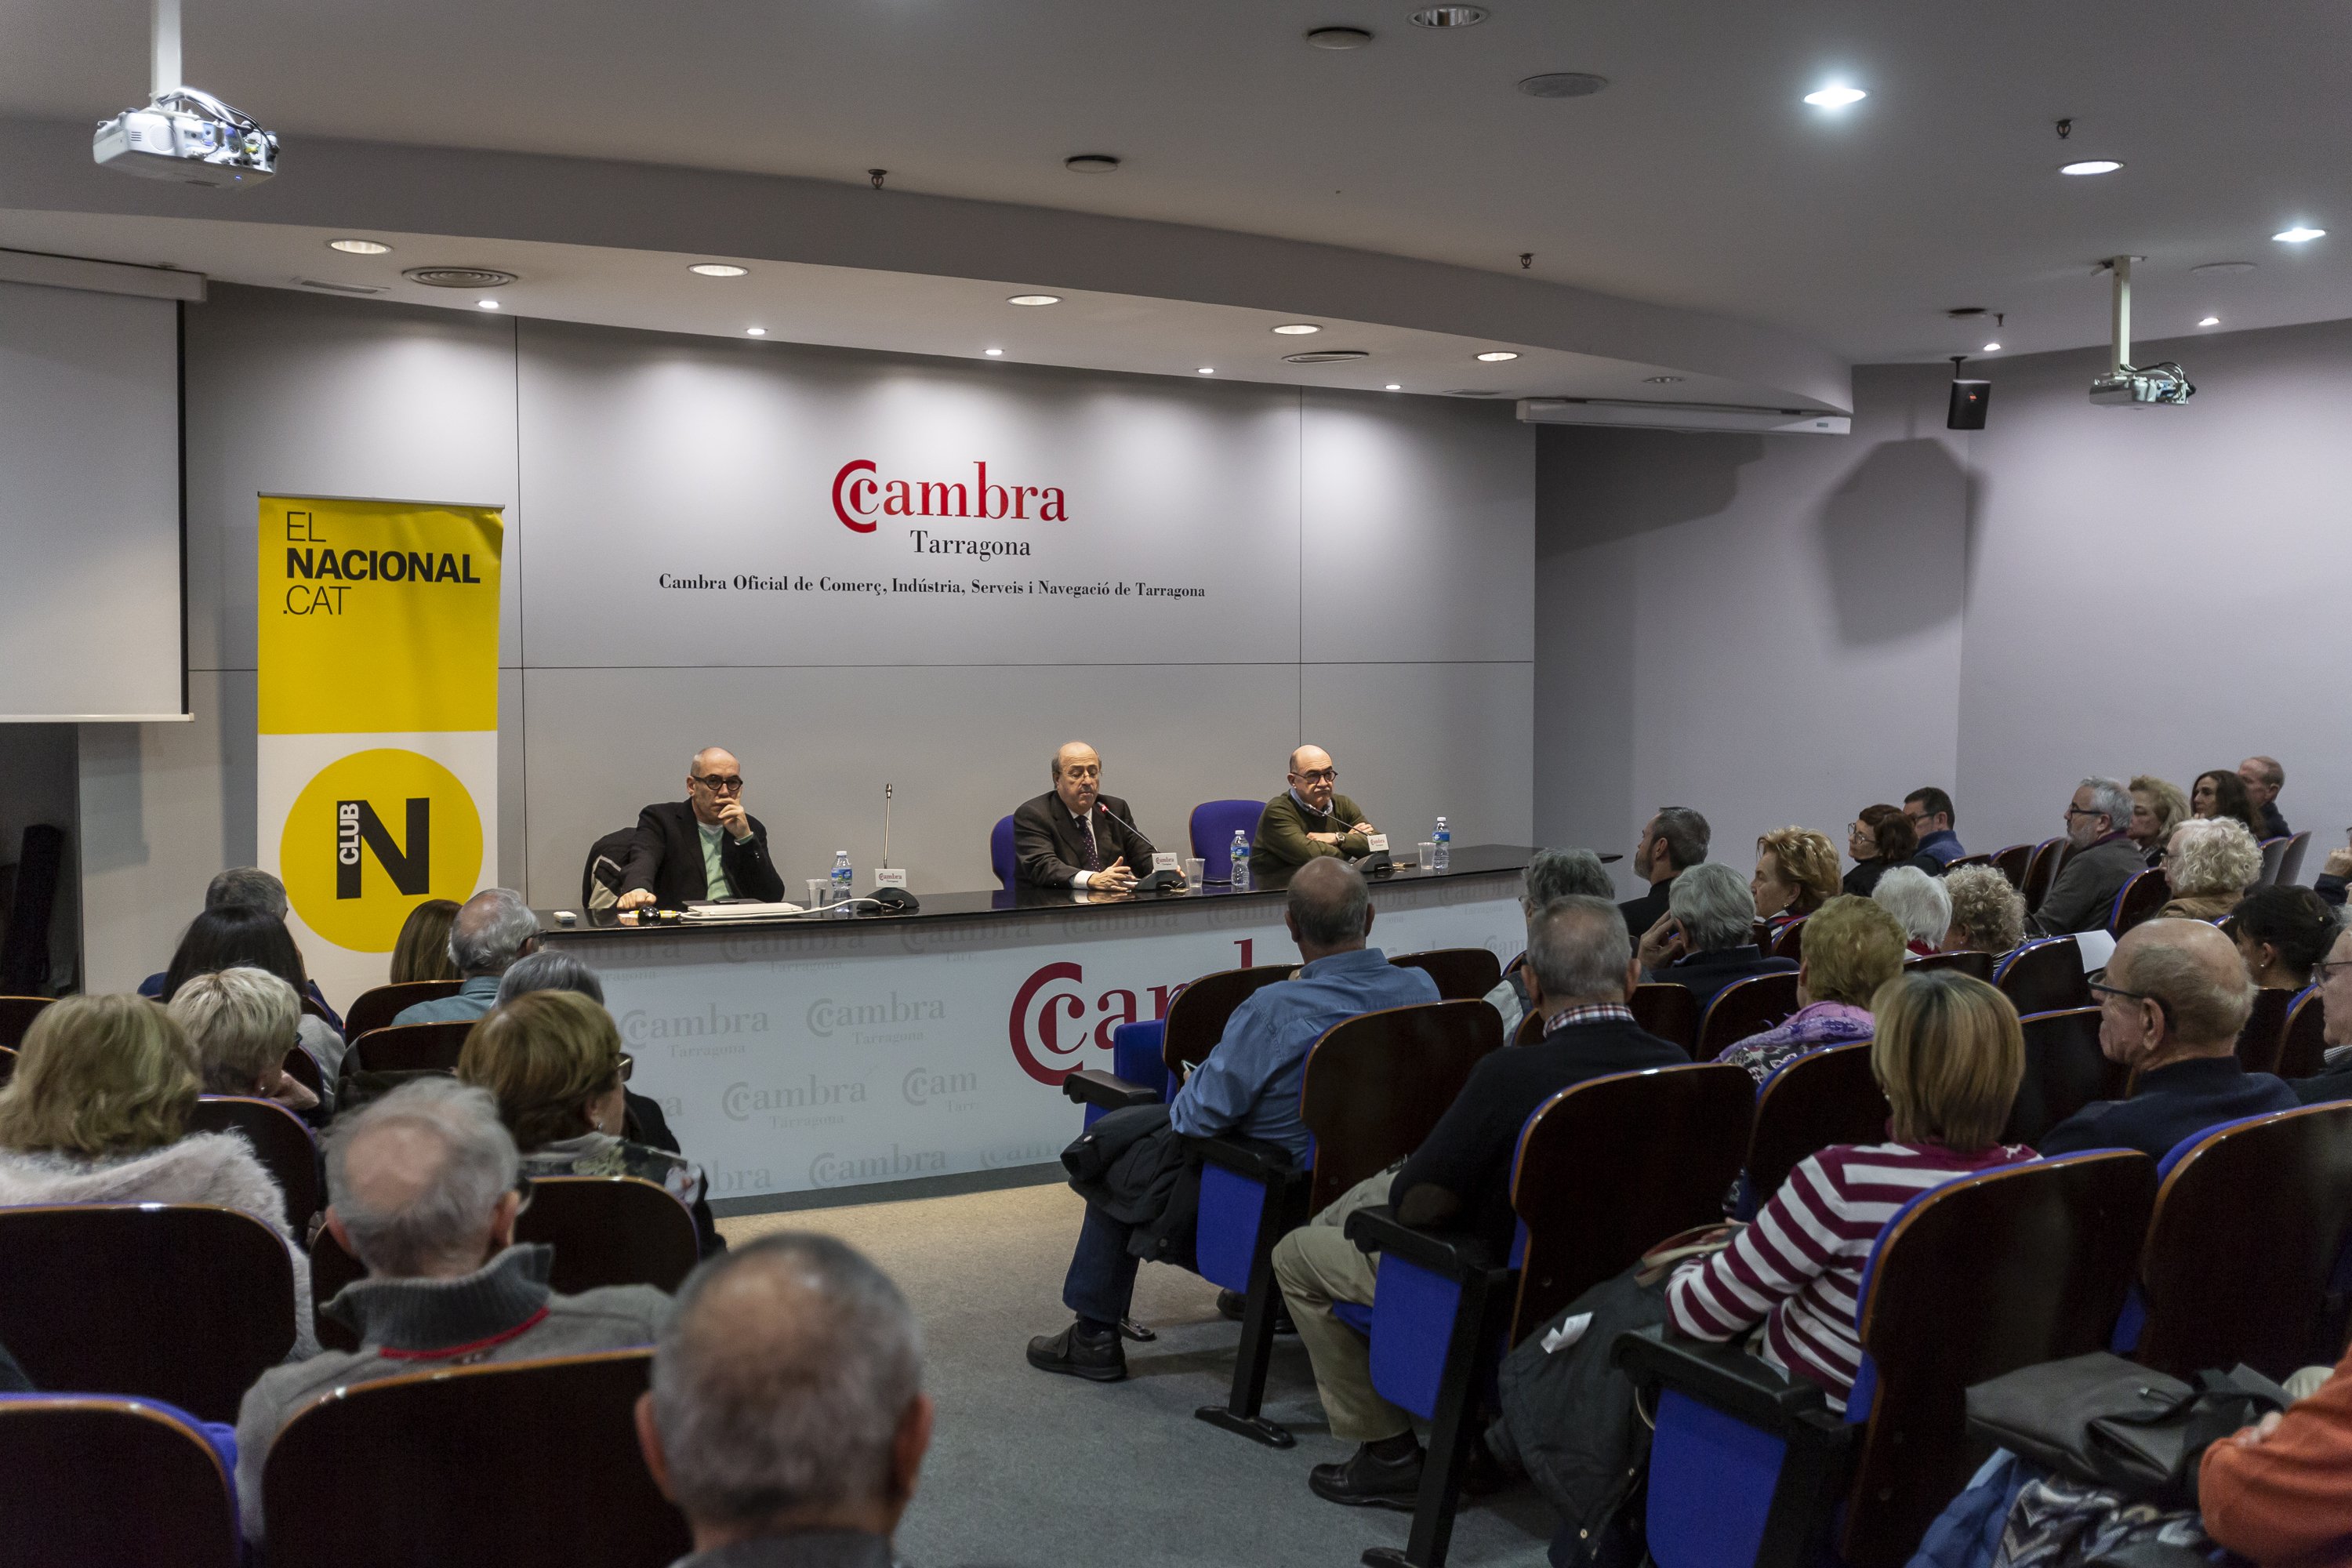 El Club El Nacional es presenta amb èxit a Tarragona